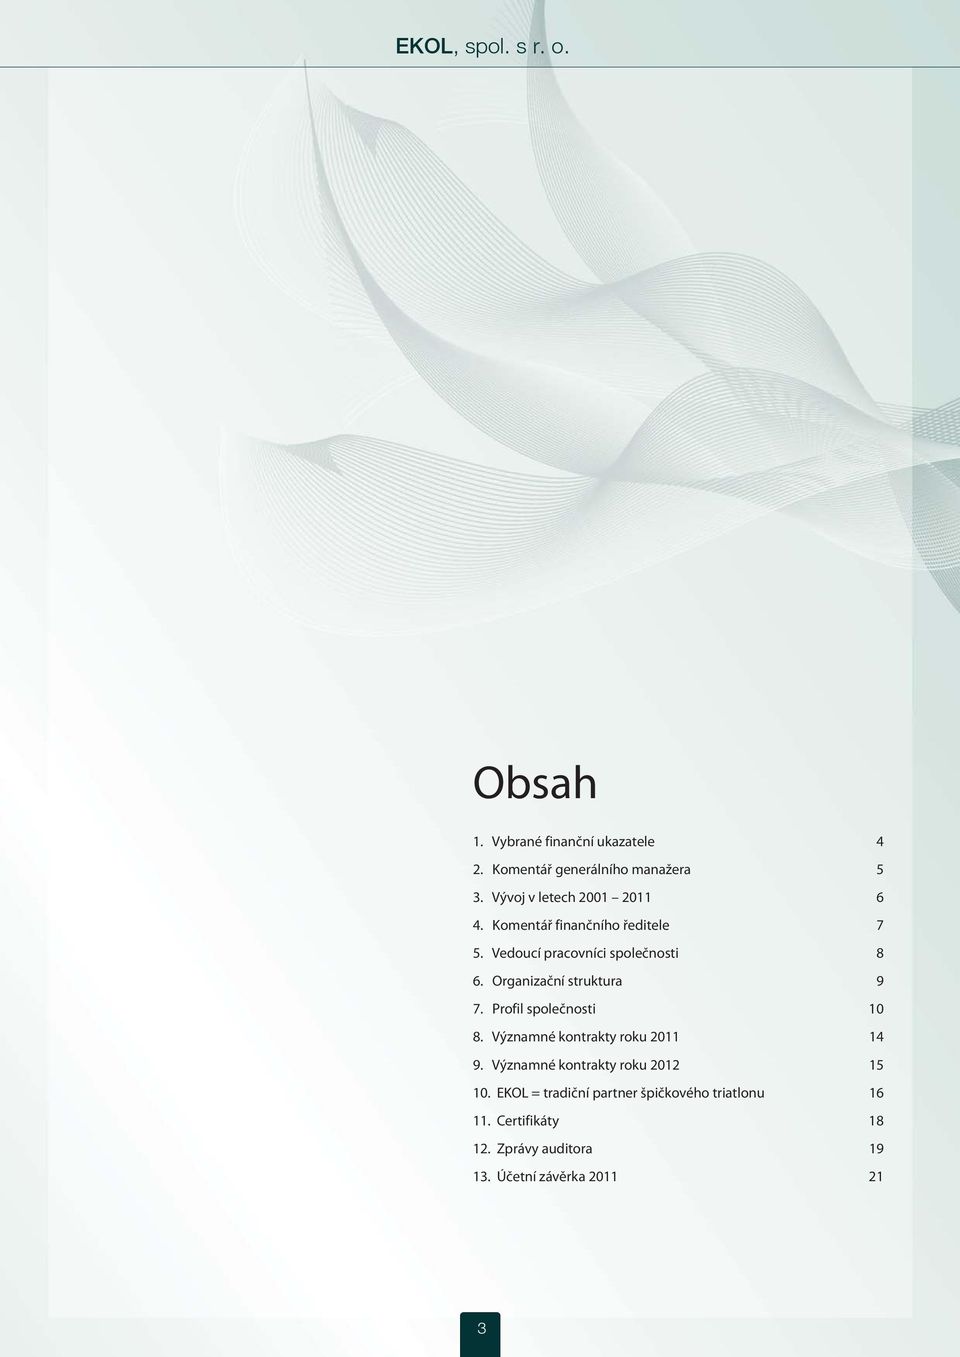 Organizační struktura 9 7. Profil společnosti 10 8. Významné kontrakty roku 2011 14 9.